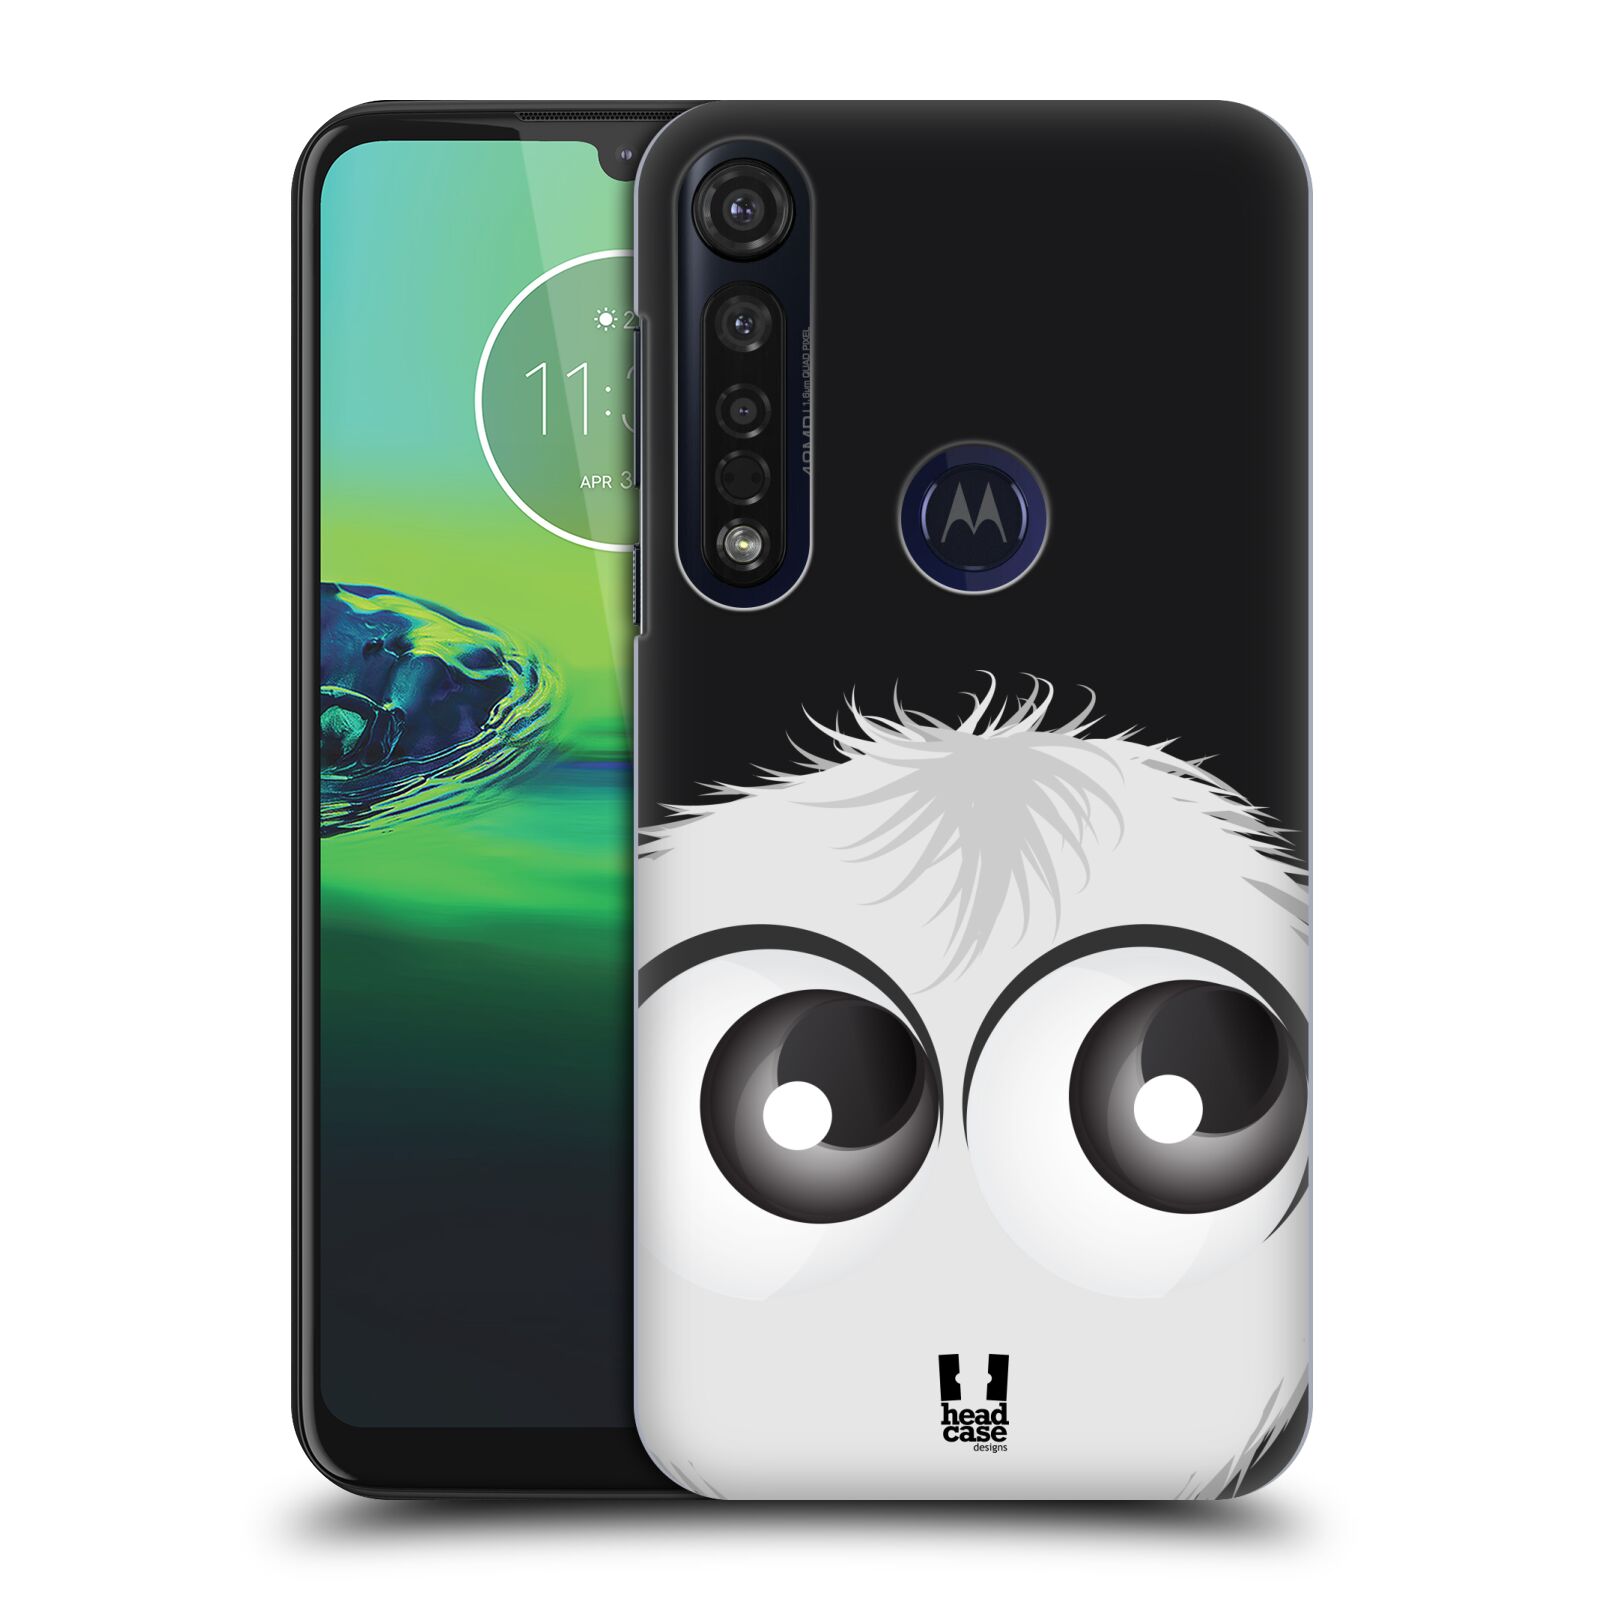 Pouzdro na mobil Motorola Moto G8 PLUS - HEAD CASE - vzor Barevný chlupatý smajlík BÍLÁ černé pozadí